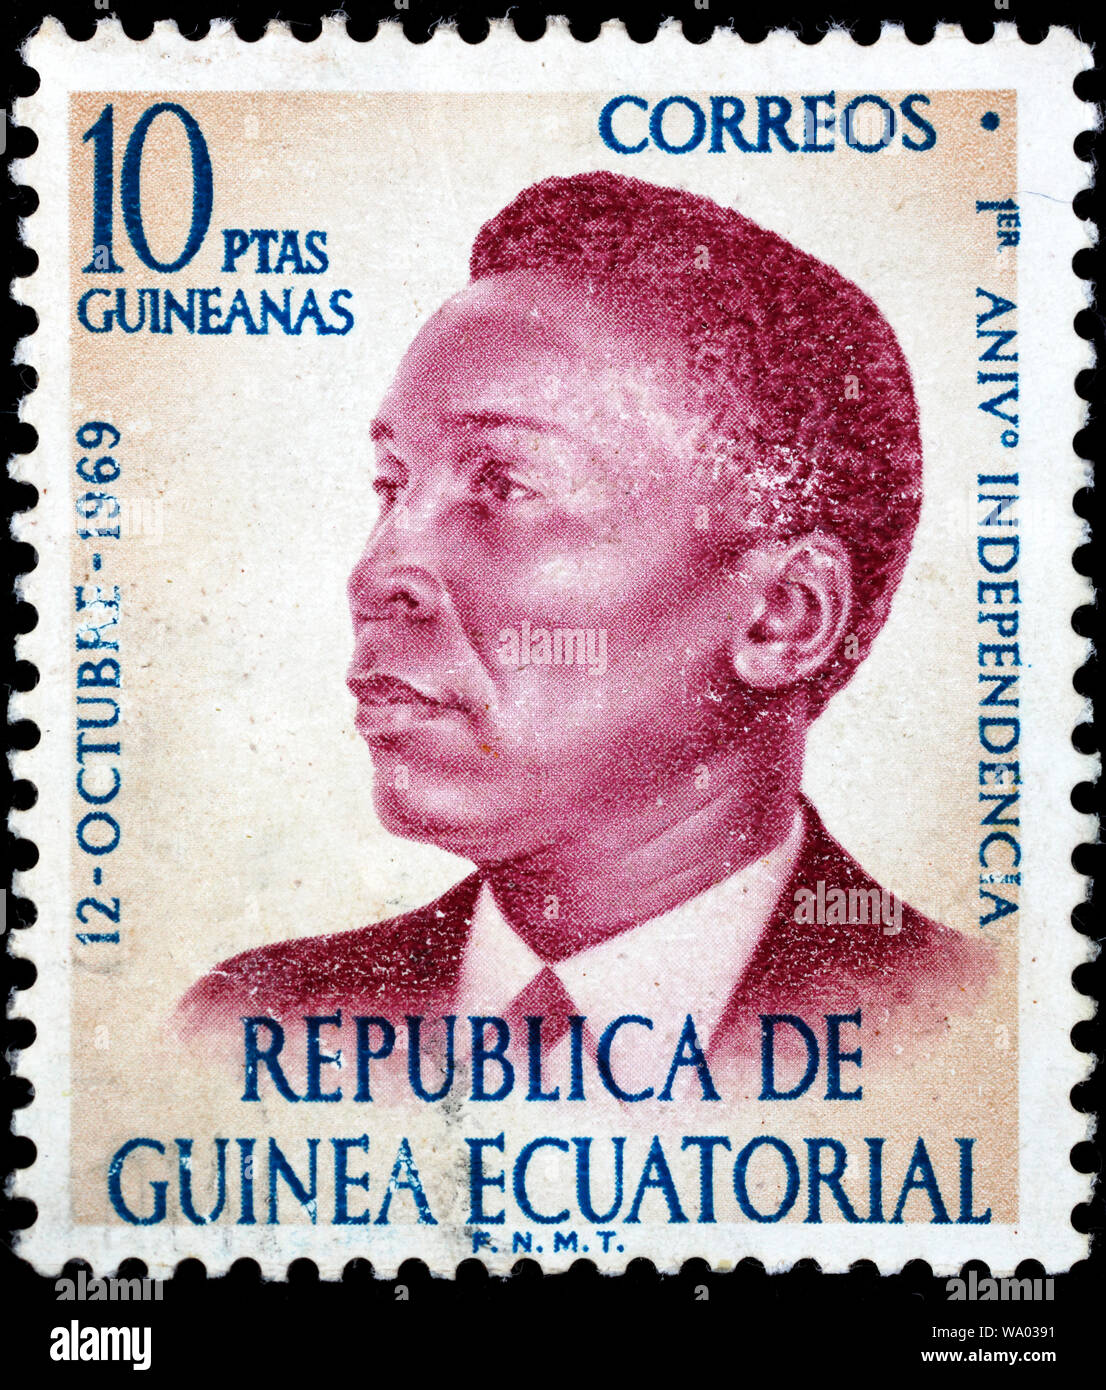 Francisco Macias Nguema, first President of Equatorial Guinea (1968-1979), postage stamp, Equatorial Guinea, 1970 Stock Photo